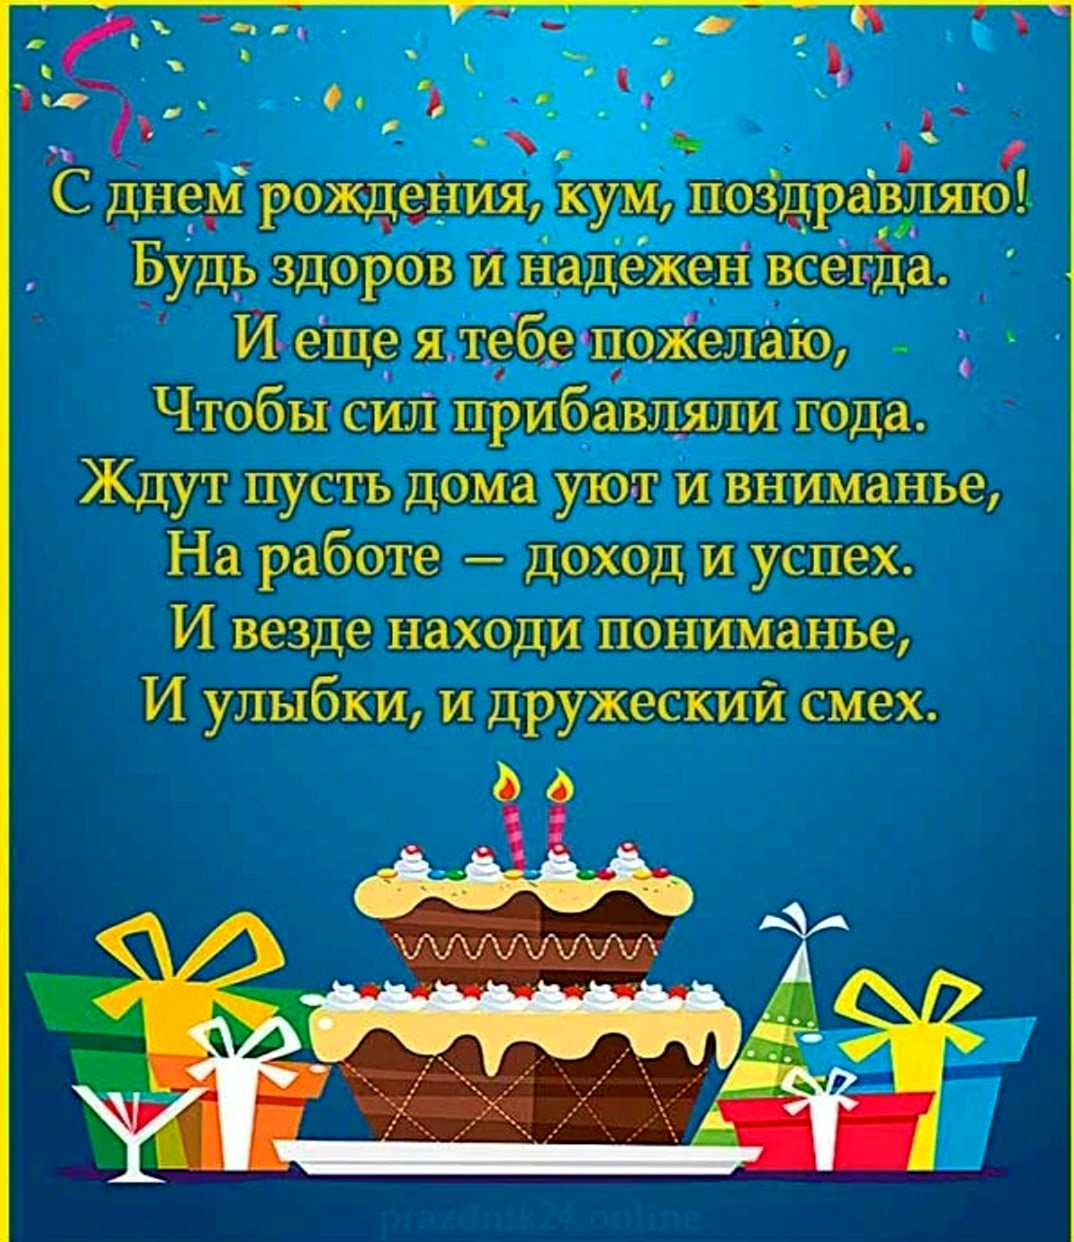 Поздравления с днем рождения куме на украинском языке короткие